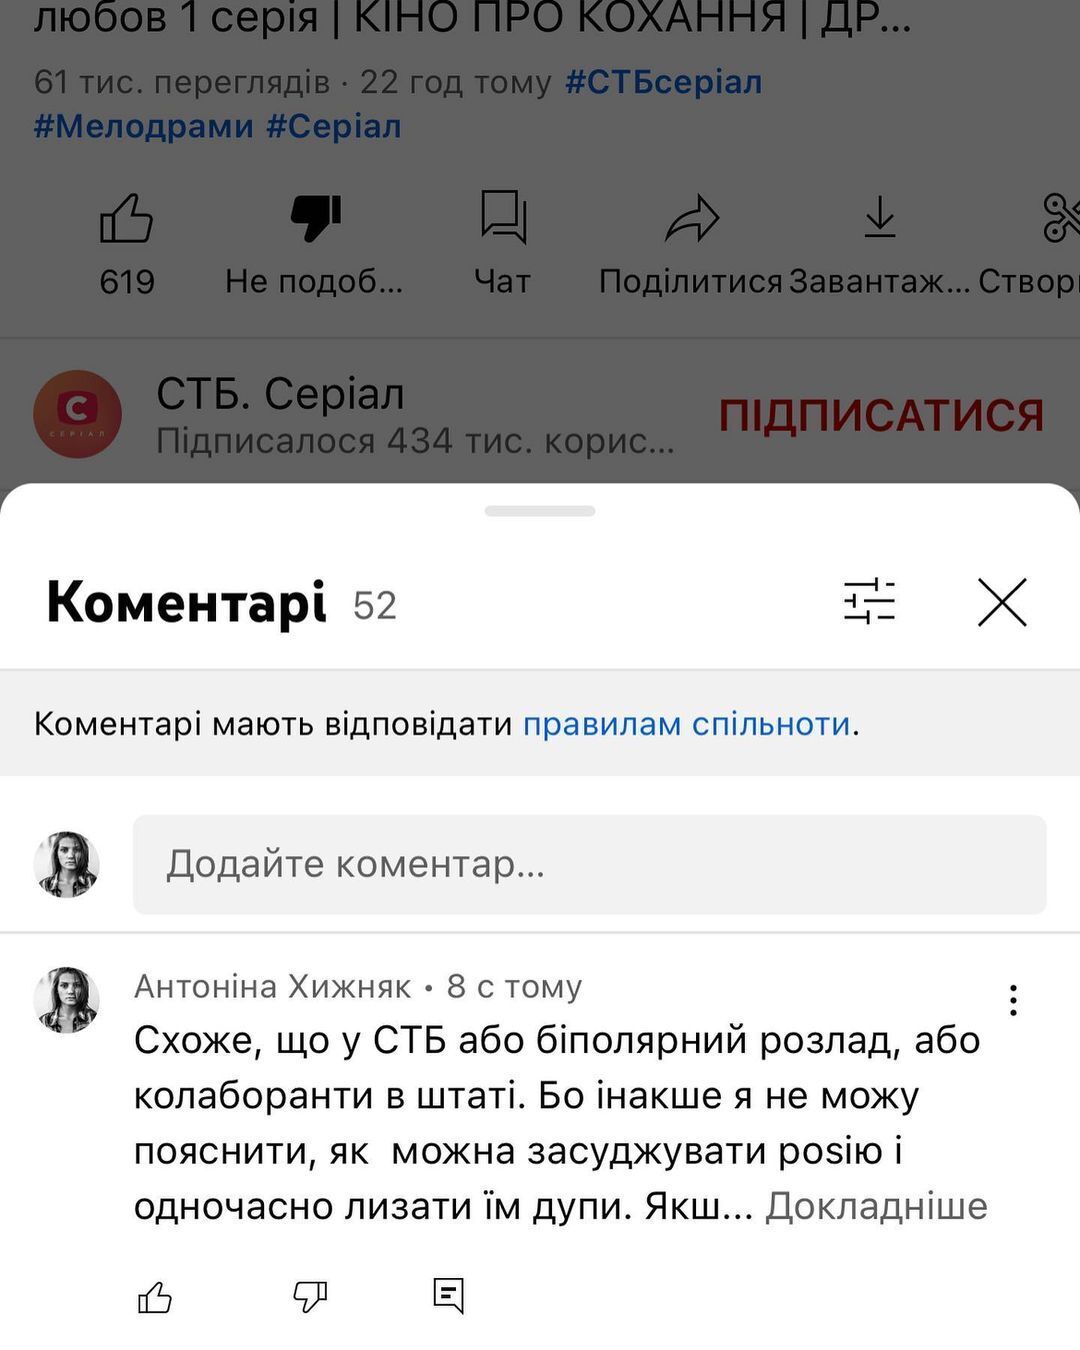 Антонина Хижняк осудила СТБ за трансляцию сериала с российской актрисой.